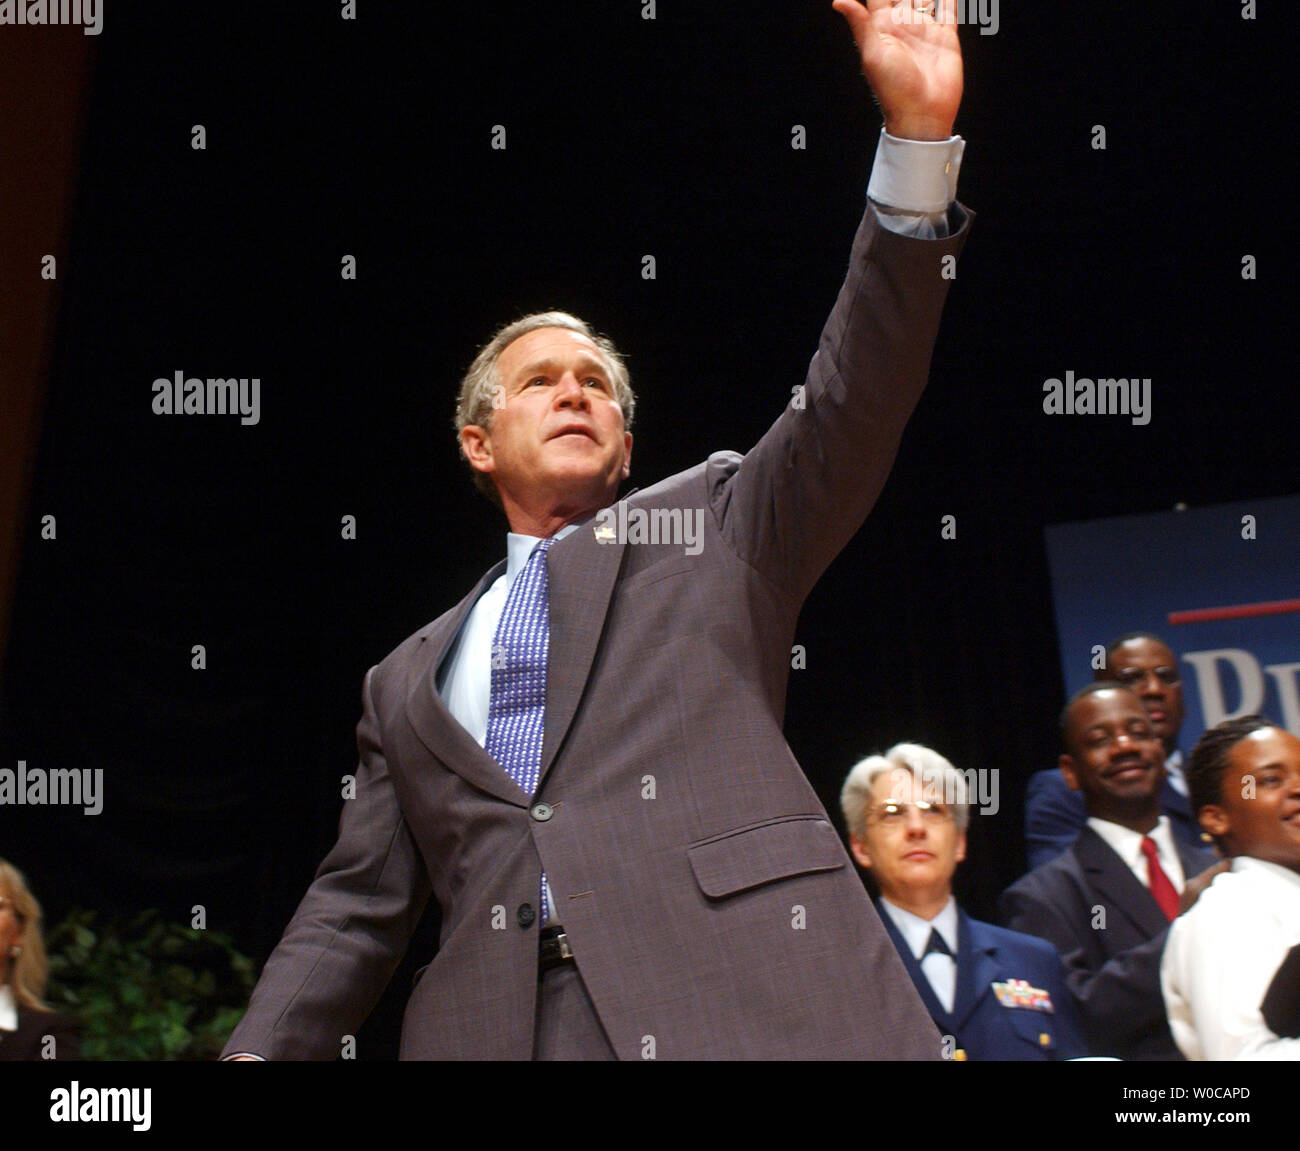 Präsident George W. Bush Wellen der Menge, die nach einem Jahr in einer Rede auf einer Jubiläumsveranstaltung für die Abteilung für Innere Sicherheit, am 2. März in Washington 2004. Bush sagte, dass das Jahr große Erfolge gebracht hat, sondern dass der Kampf gegen den Terrorismus ist lang. (UPI Foto/Michael Kleinfeld) Stockfoto